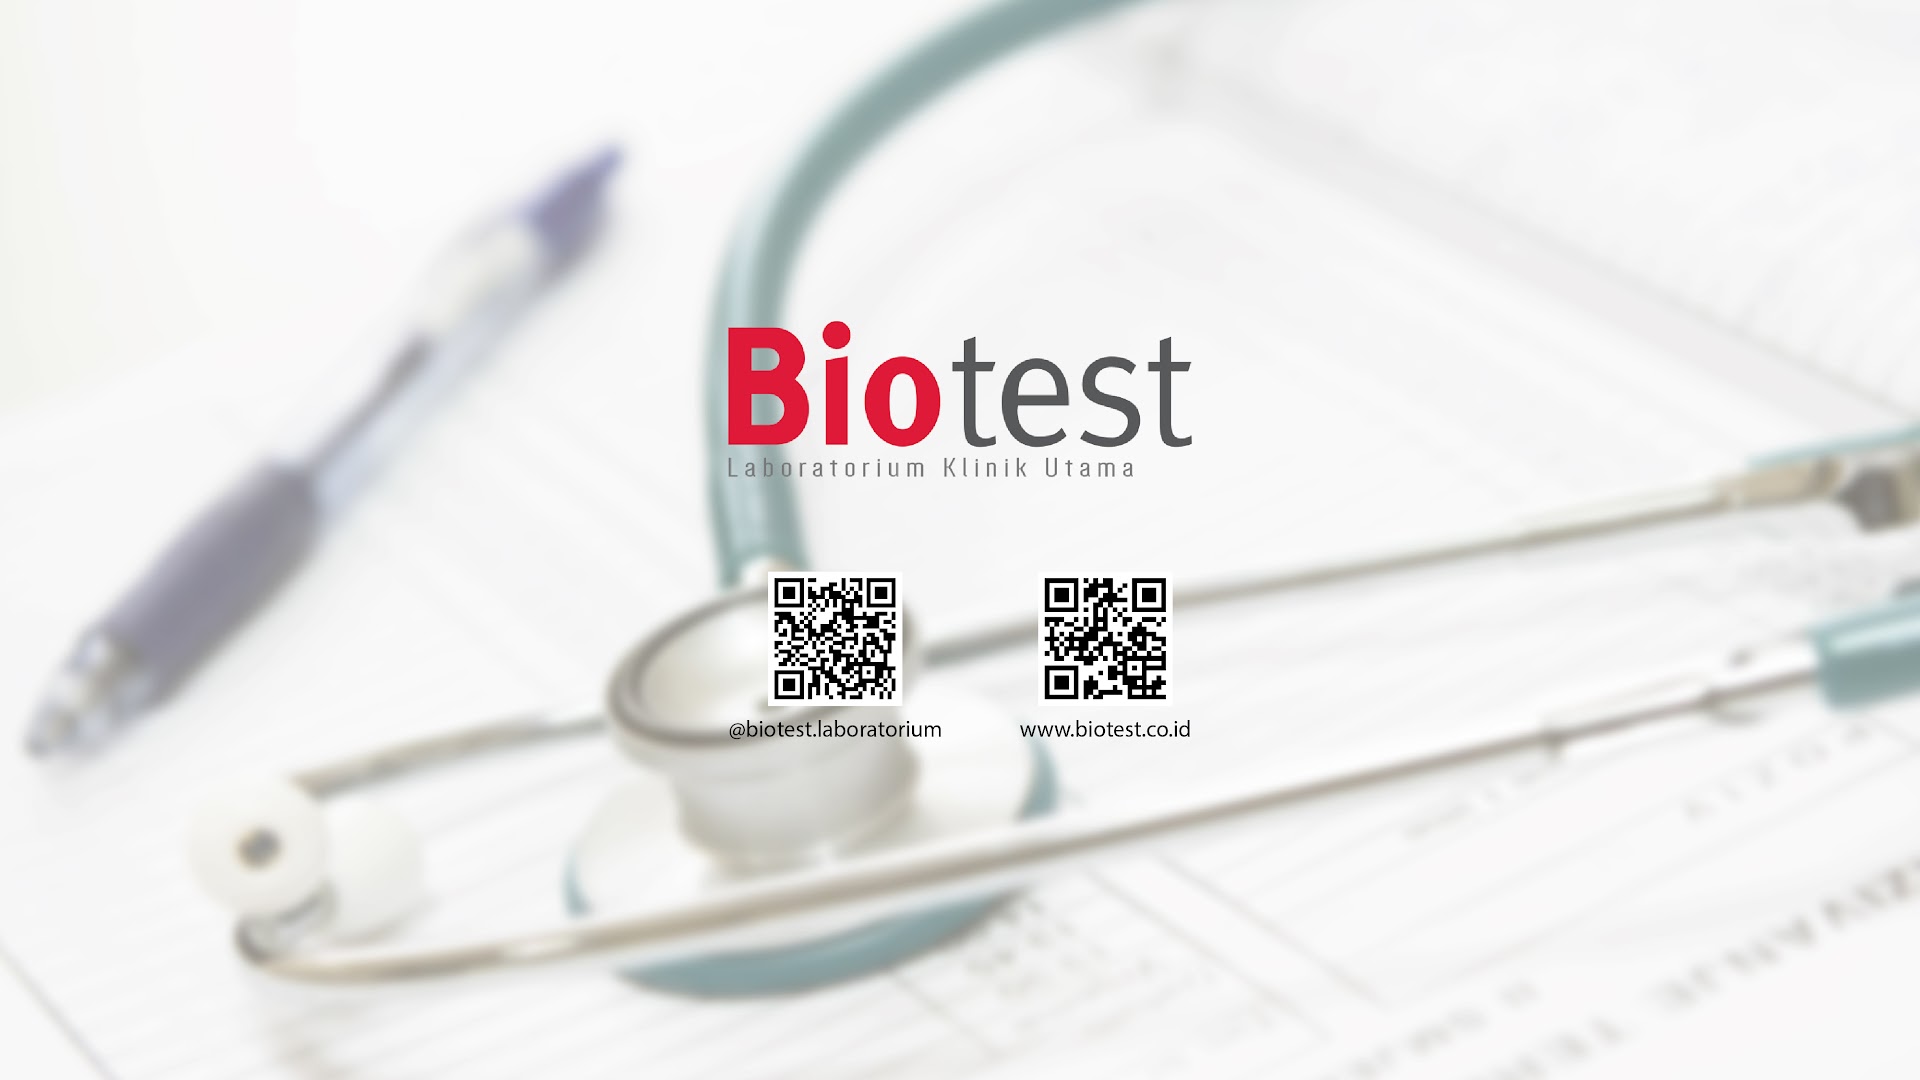 Gambar Laboratorium Klinik Biotest